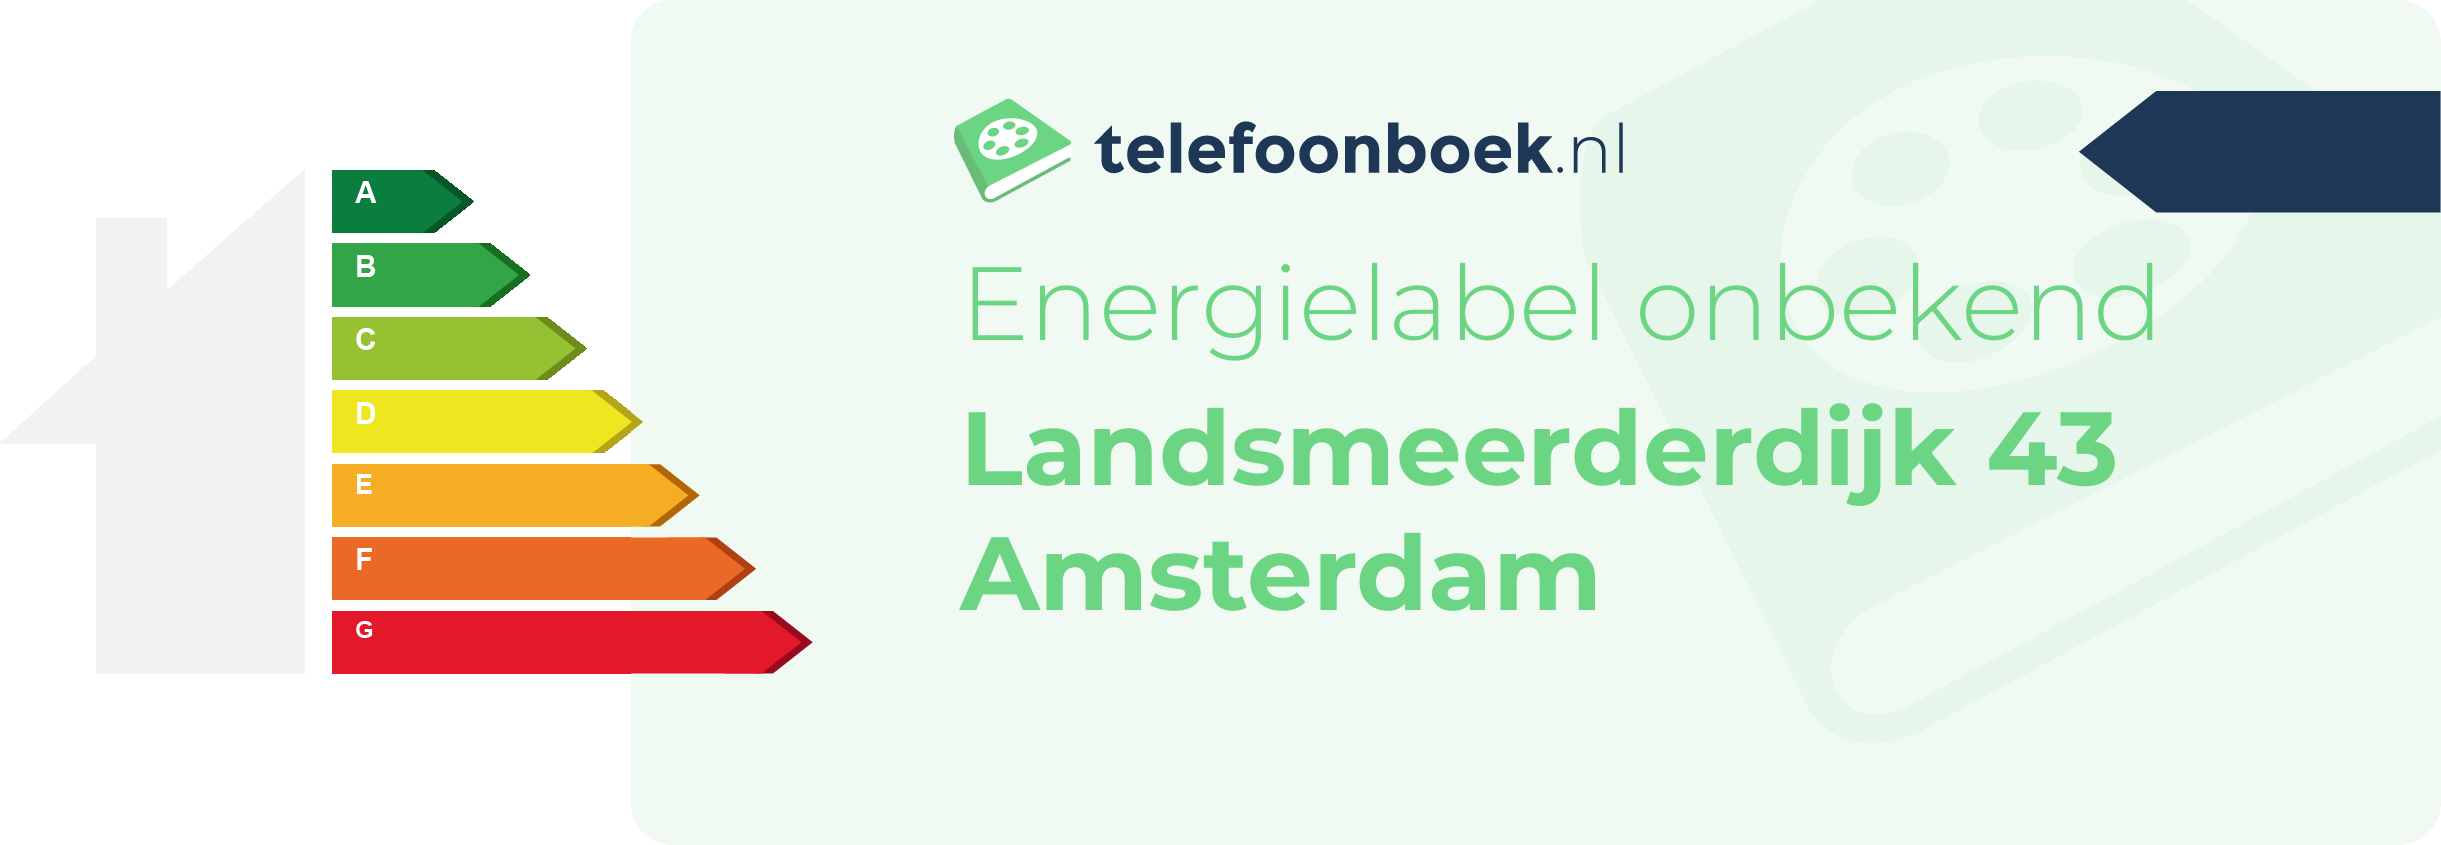 Energielabel Landsmeerderdijk 43 Amsterdam